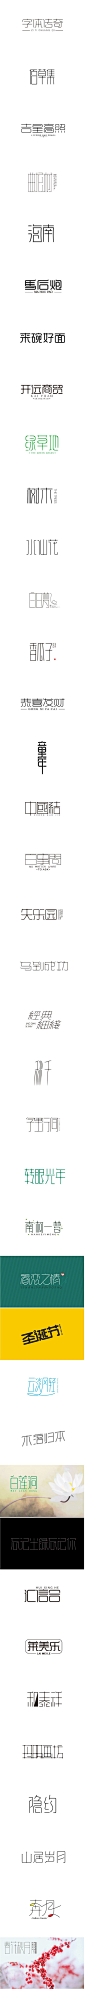 【微信公众号：xinwei-1991】整理分享 @辛未设计 ⇦点击了解更多 。字体设计中文字体设计汉字字体设计字形设计字体标志设计字体logo设计文字设计品牌字体设计！ (891).jpg